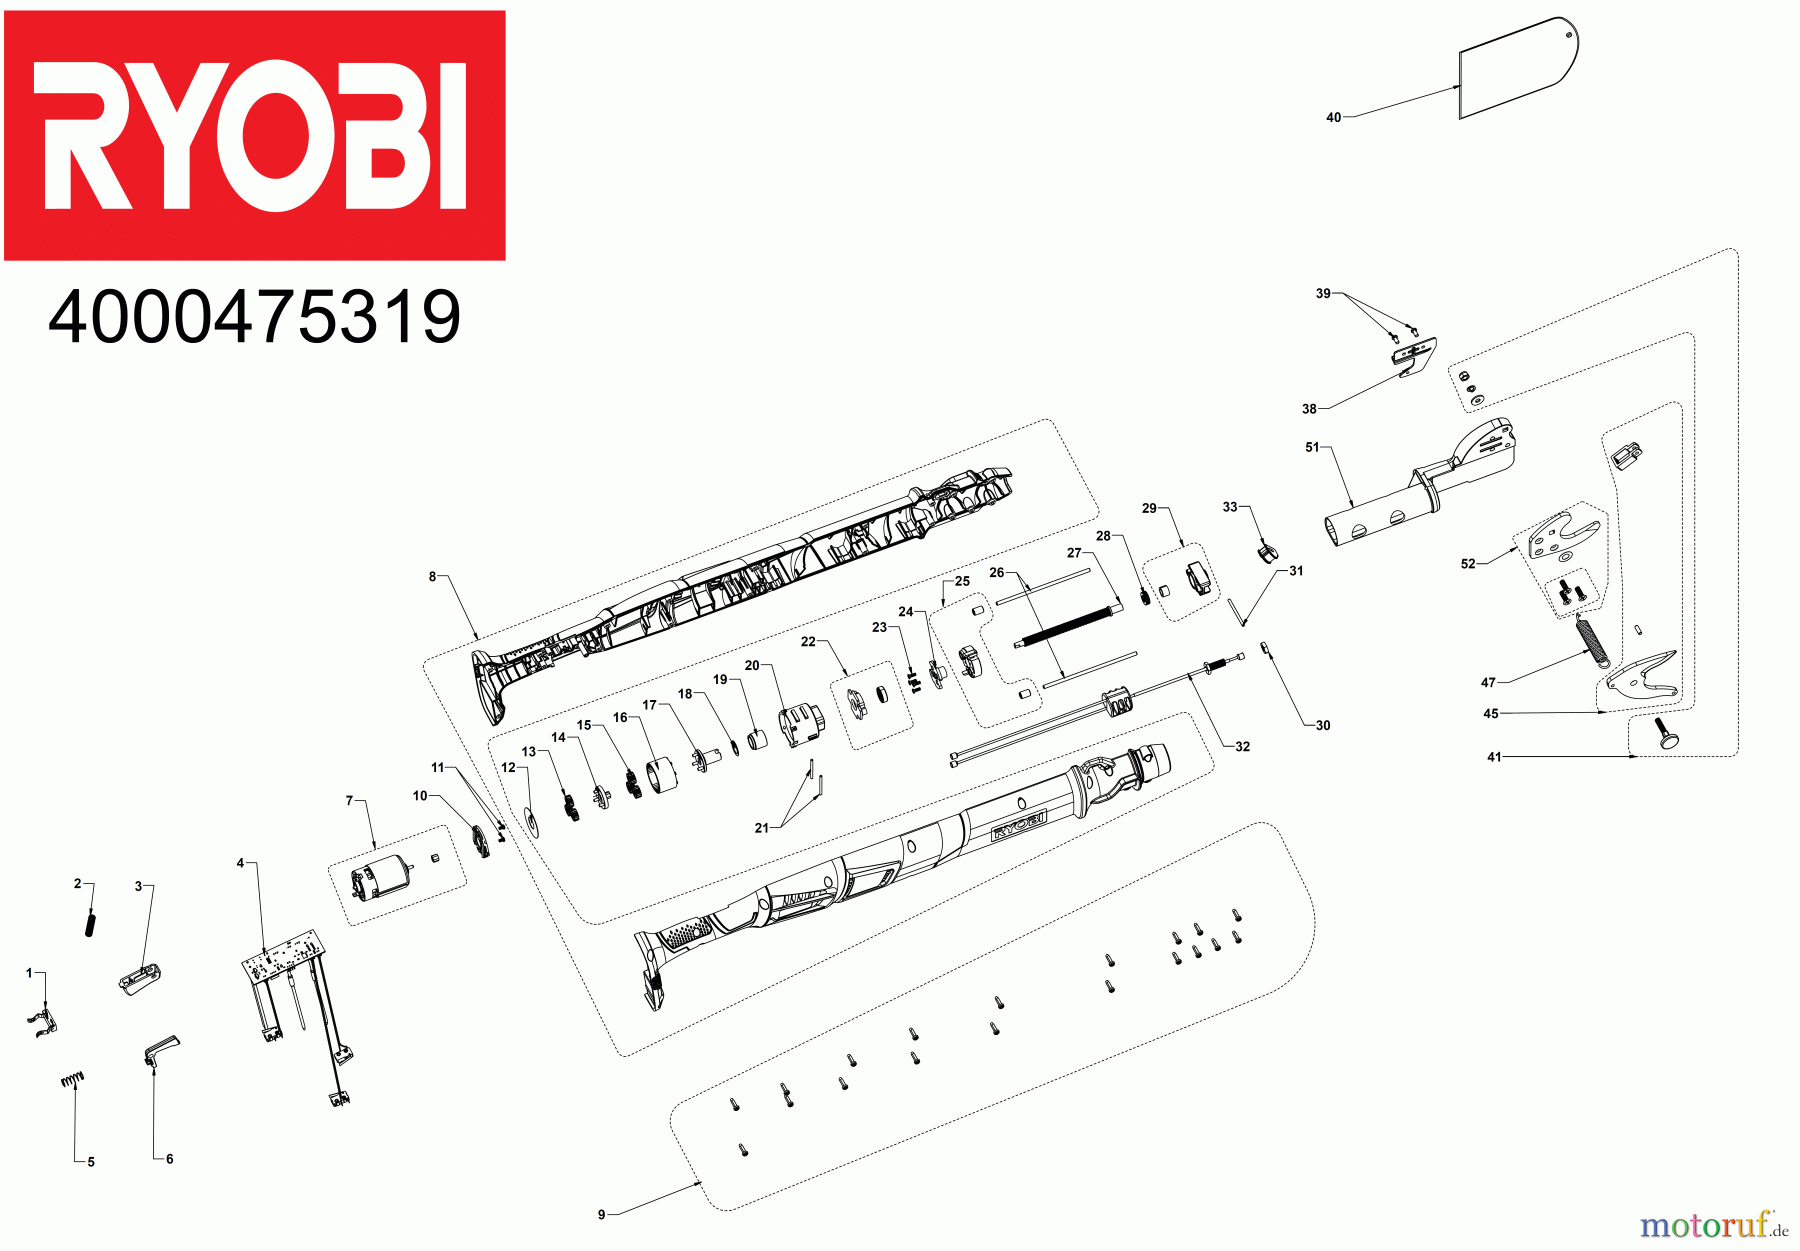  Ryobi Ast-, Strauch- und Grasscheren OLP1832BX 18 V ONE+ Akku-Astschere, Schnittstärke 32 mm Seite 1